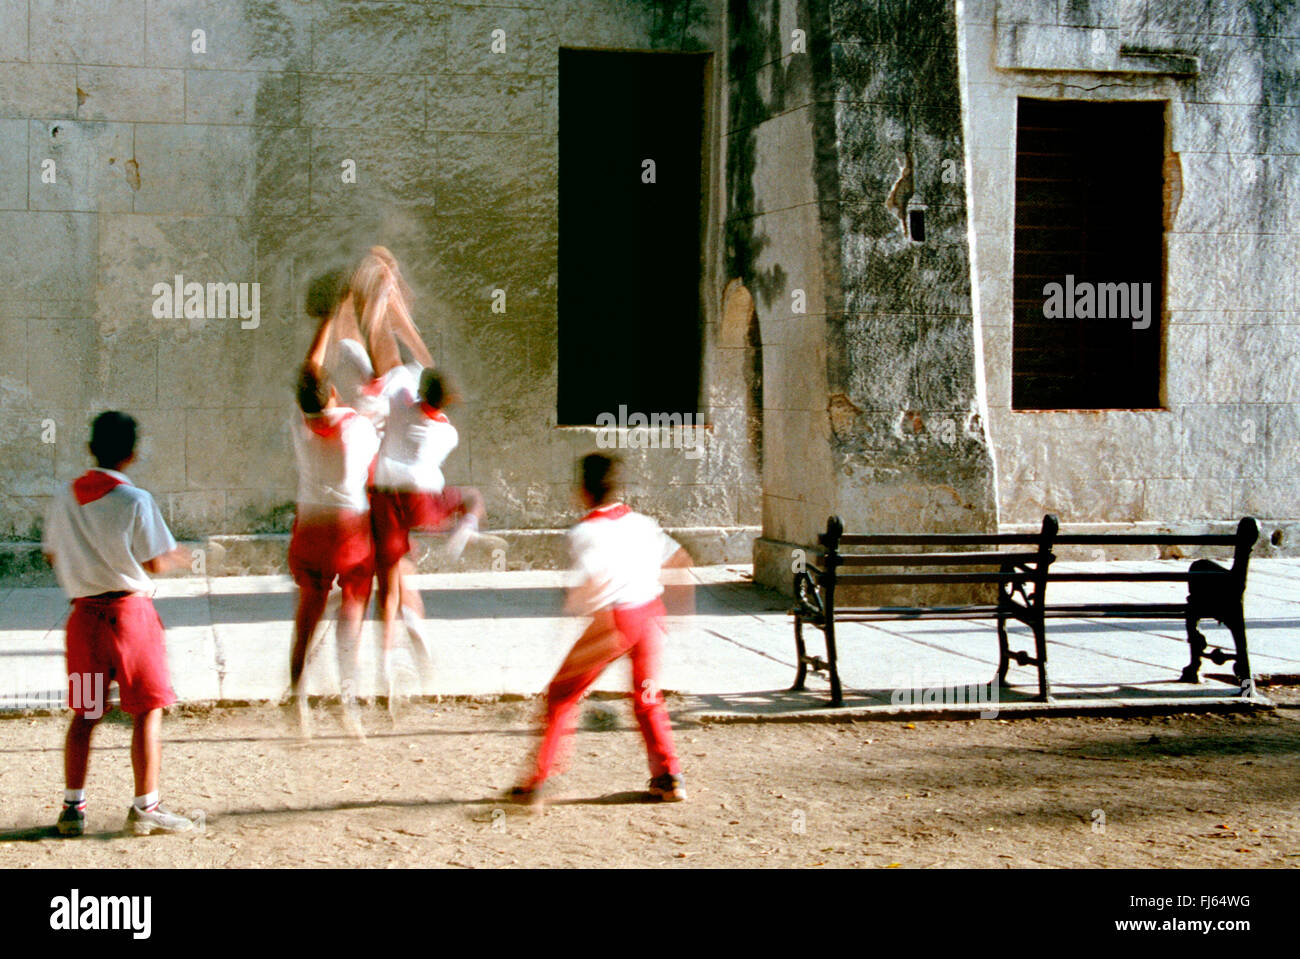 Cuban children playing, Cuba Stock Photo